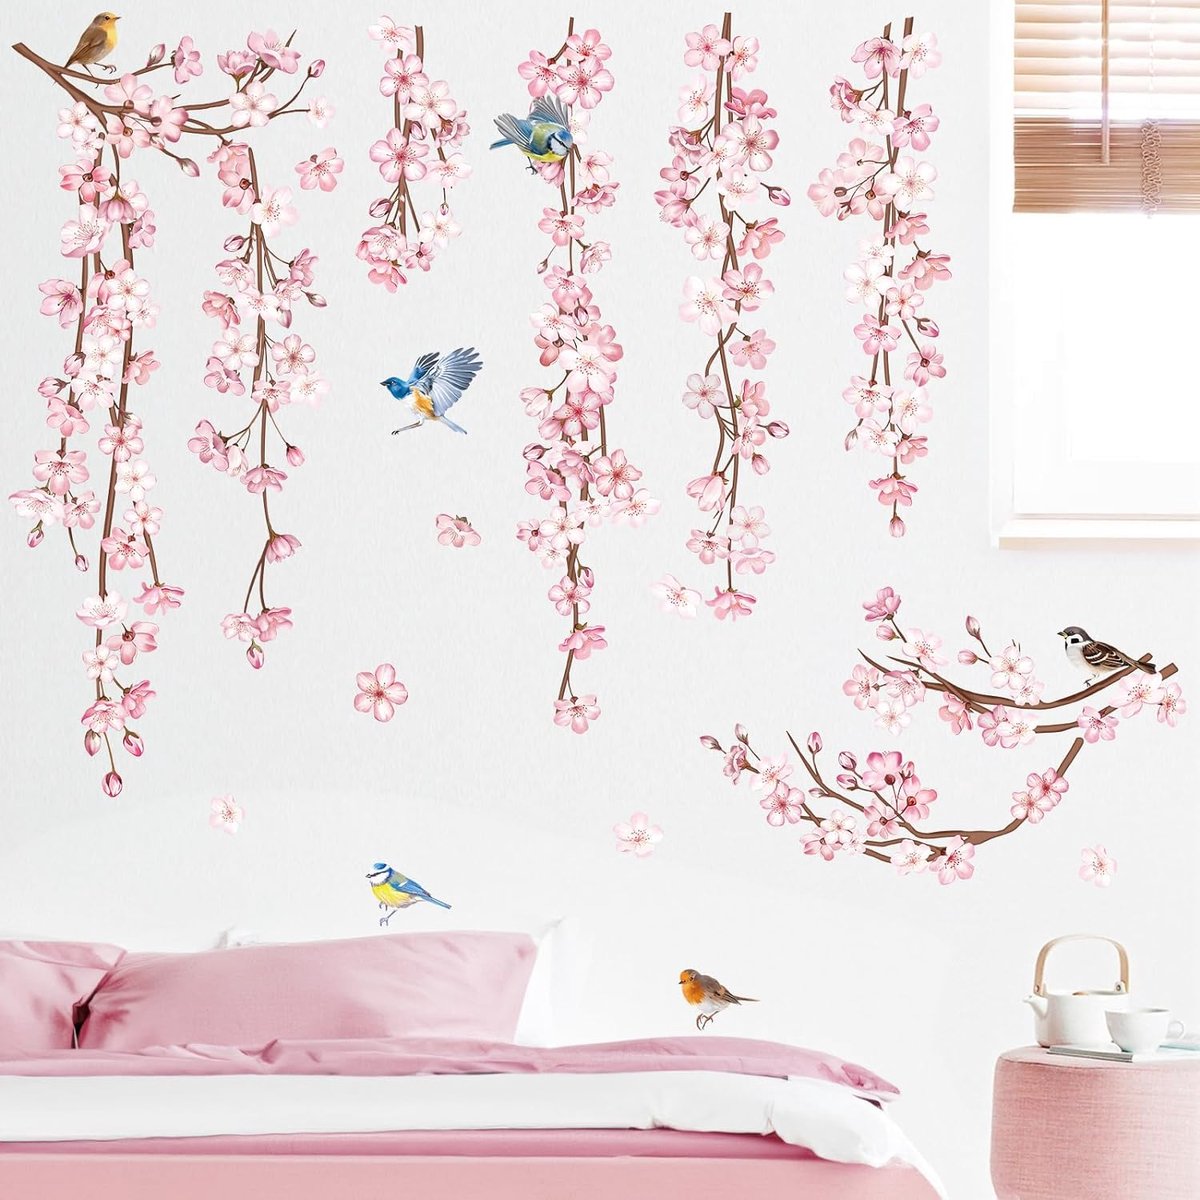 Stickers Muraux Fleurs de Cerisier Rose Autocollant Mural Vigne Fleur  Branche Oiseaux Décoration Murale Chambre Salon Fenetre